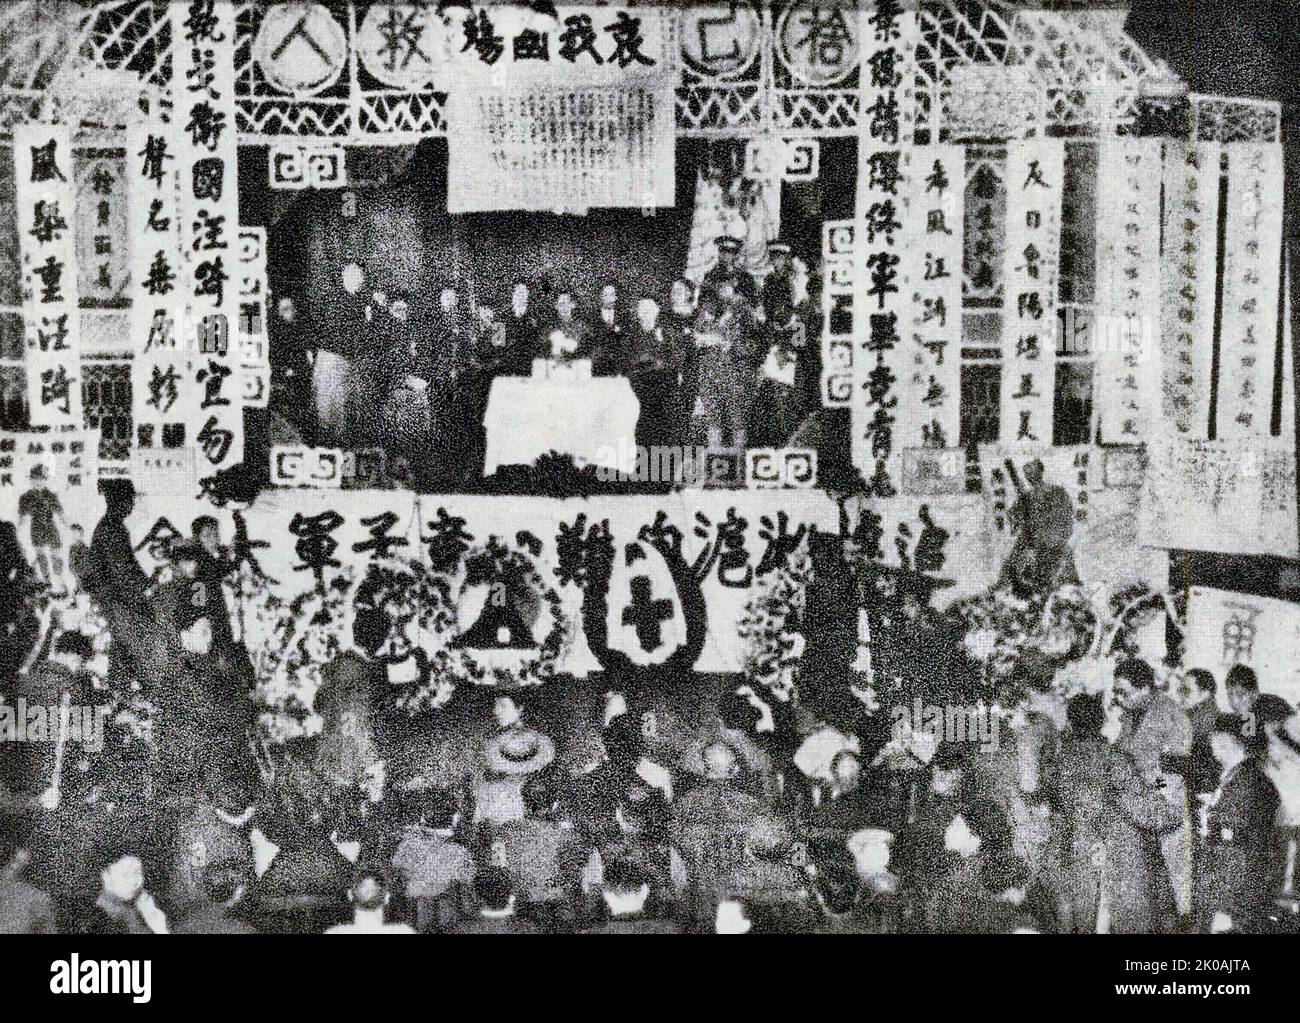 I membri di Boy Scouts Bao Zhengwu, Luo Yunxiang, Mao Weixiang, Ying Wenda sono stati sacrificati durante il primo soccorso sul campo. Nella foto sono raffigurate persone provenienti da tutti i settori della vita a Shanghai che tengono un servizio commemorativo nella memoria dei Boy Scout che sono morti nella battaglia di Shanghai. La battaglia di Shanghai fu il primo dei ventidue grandi impegni tra l'Esercito rivoluzionario Nazionale della Repubblica di Cina e l'Esercito Imperiale Giapponese dell'Impero del Giappone all'inizio della seconda Guerra sino-Giapponese. Foto Stock